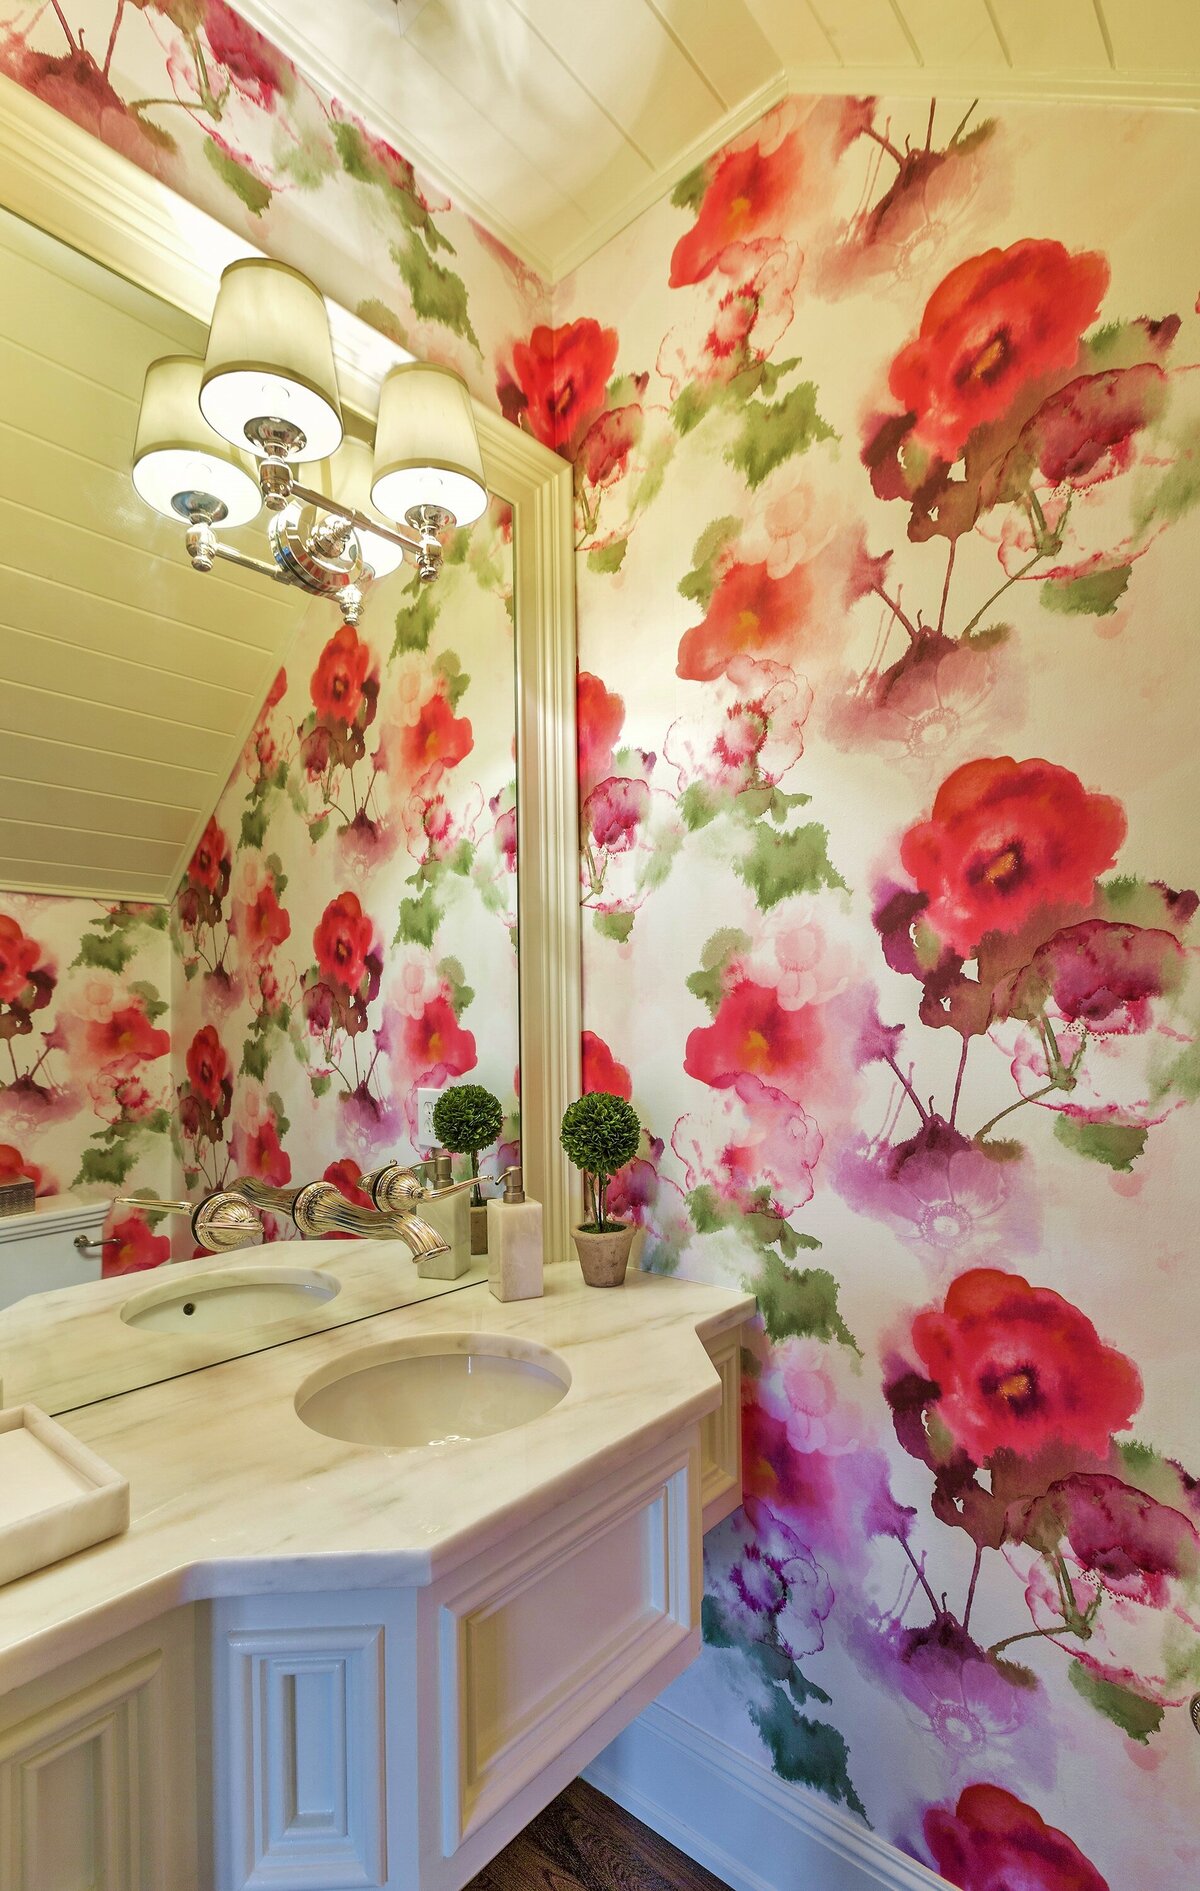 Flower Statement Bathroom Walls